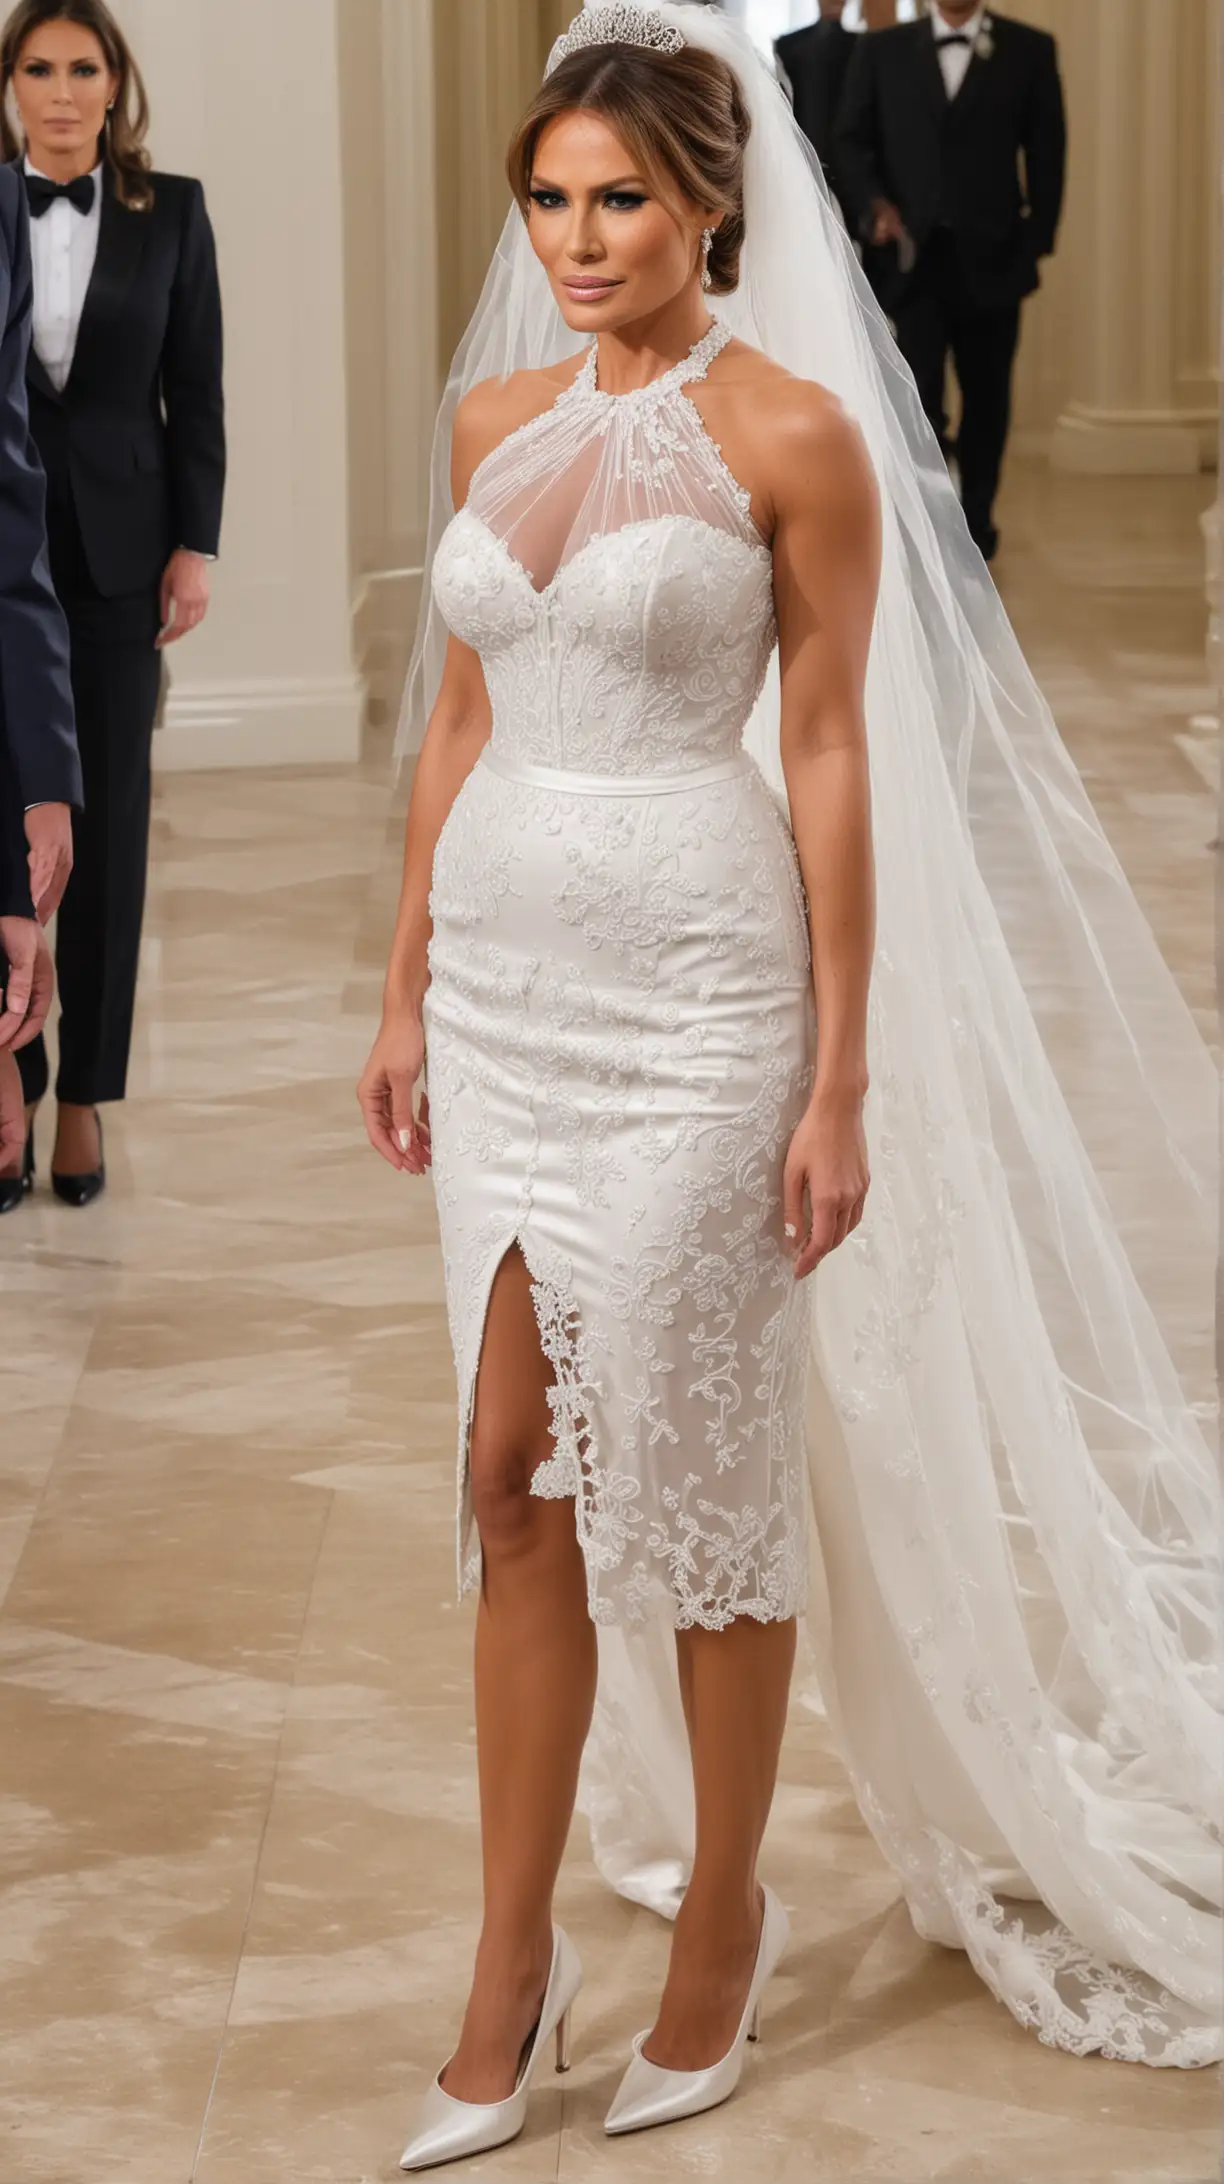 Melania Trump Bride in Elegant High Heels with Striking Gaze